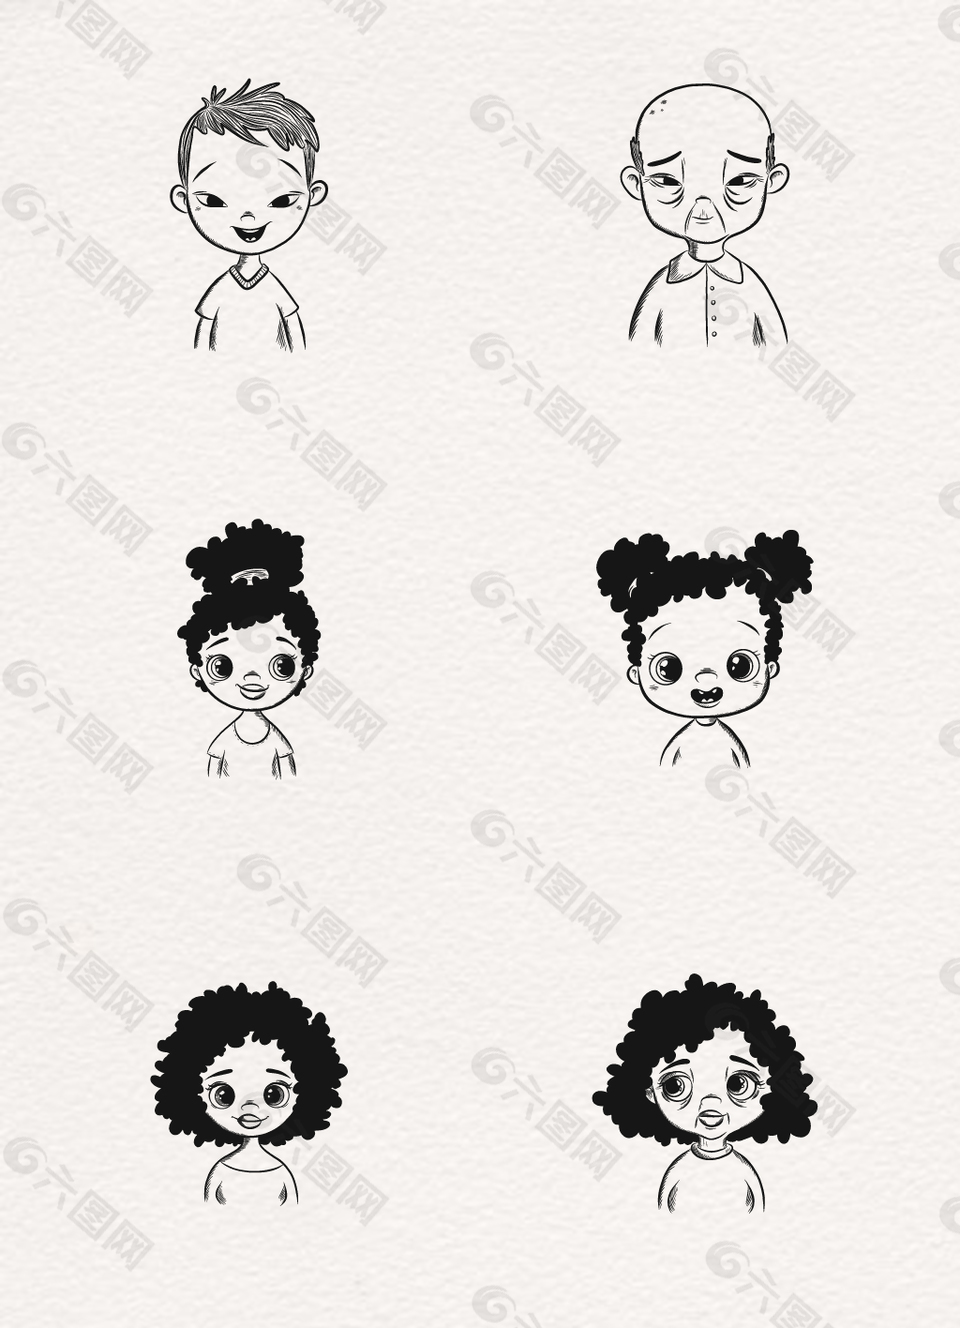 6款不同发型和性别的人物素描头像